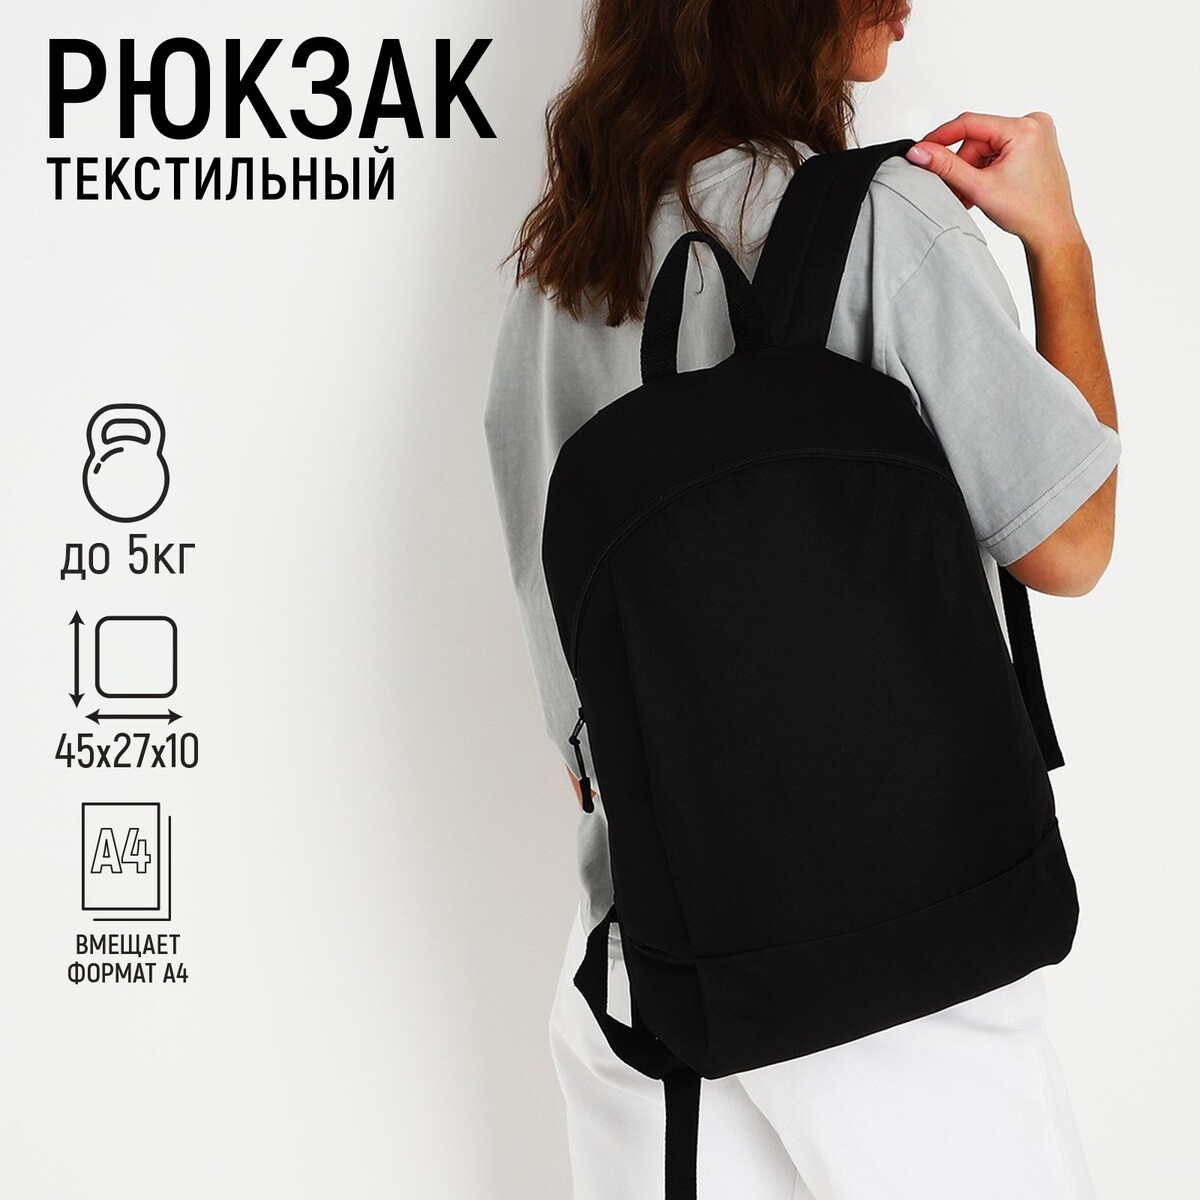 Рюкзак текстильный 46х30х10 см, вертикальный карман, цвет черный рюкзак текстильный 46х30х10 см вертикальный карман